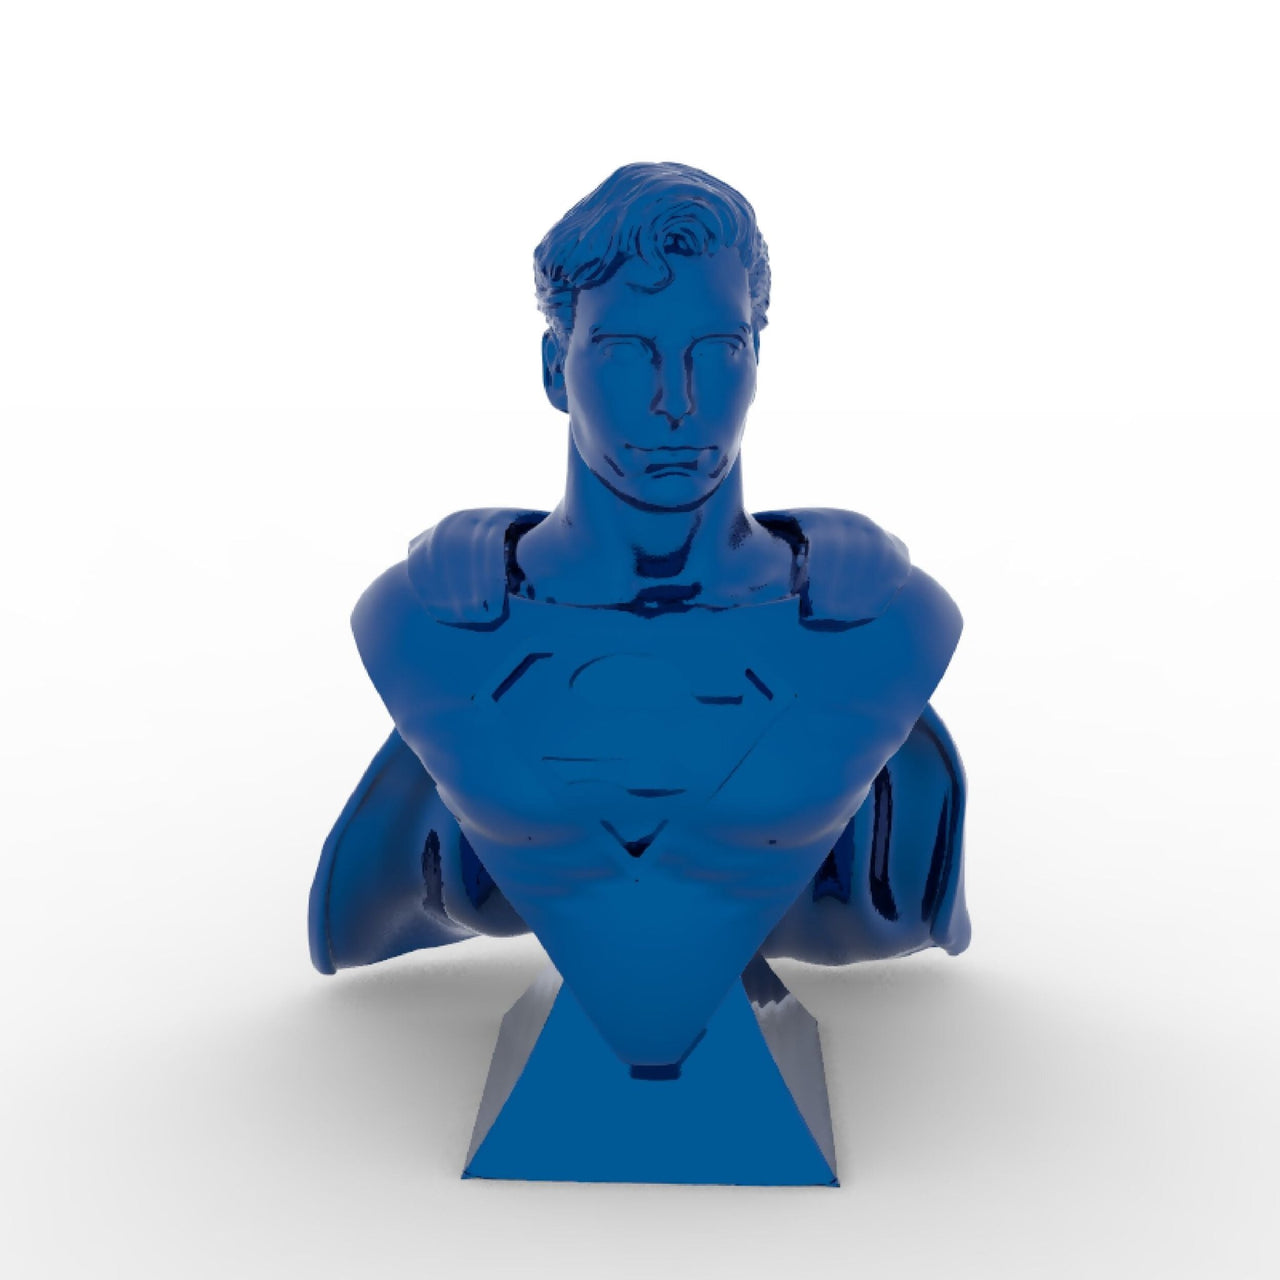 Superman Christopher Reeve Bust - 3DWave.us